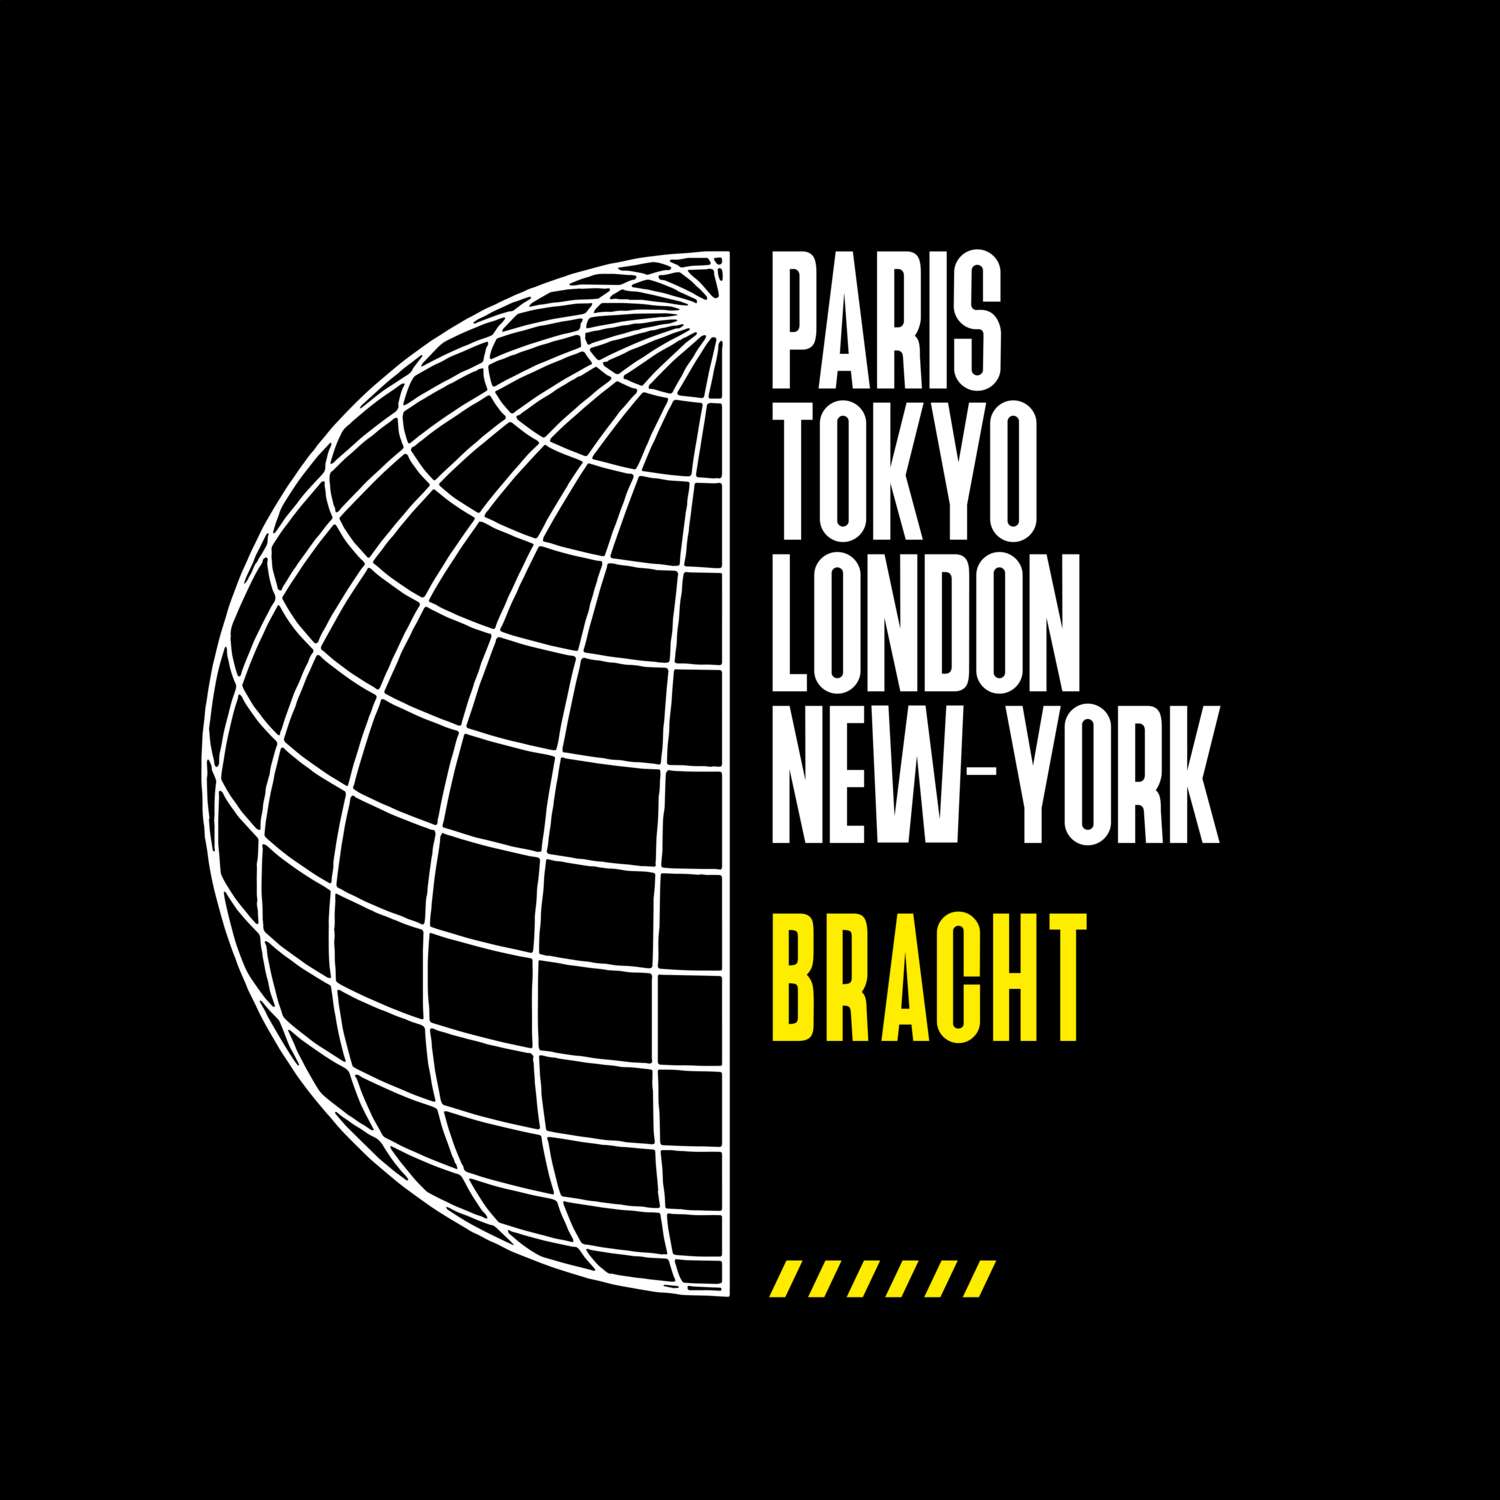 Bracht T-Shirt »Paris Tokyo London«